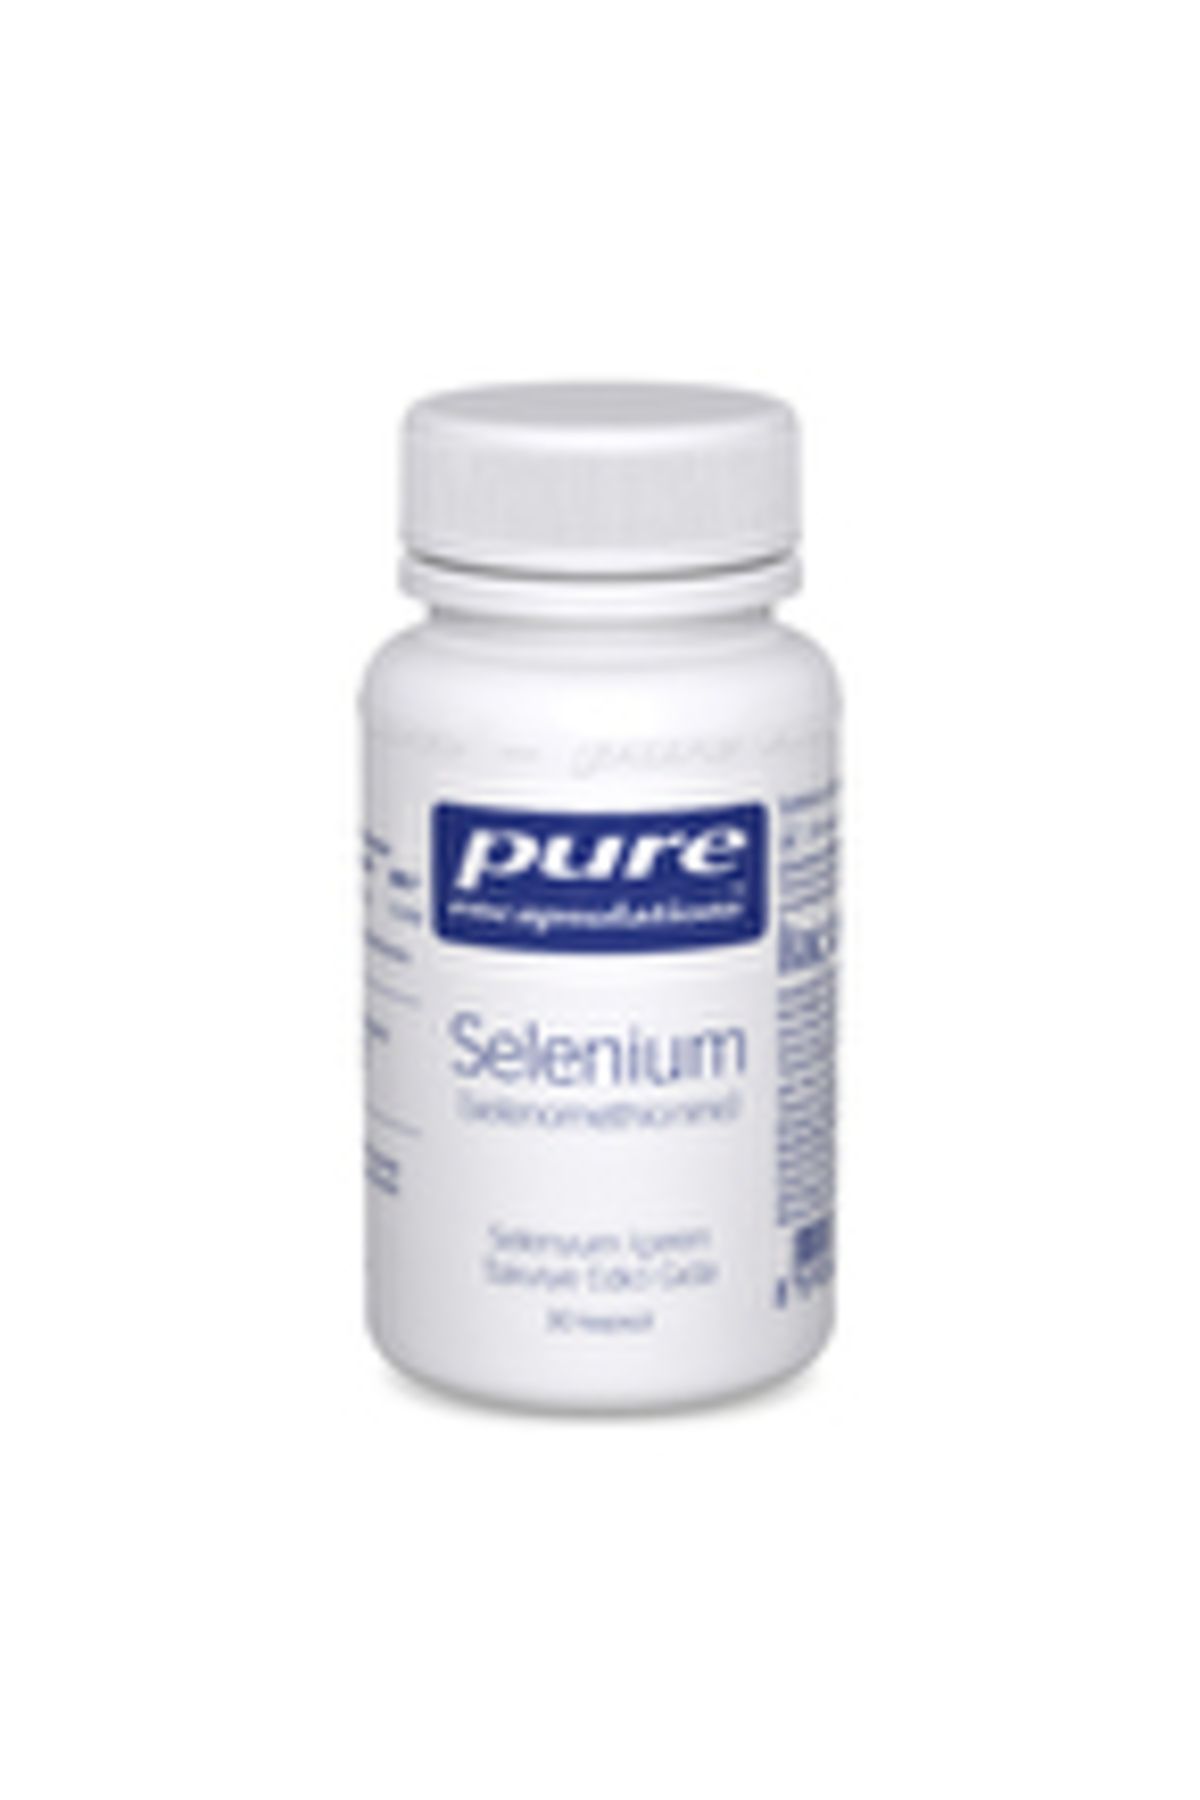 Pure Encapsulations Selenium 200 Mcg 30 Kapsül ( 1 ADET )